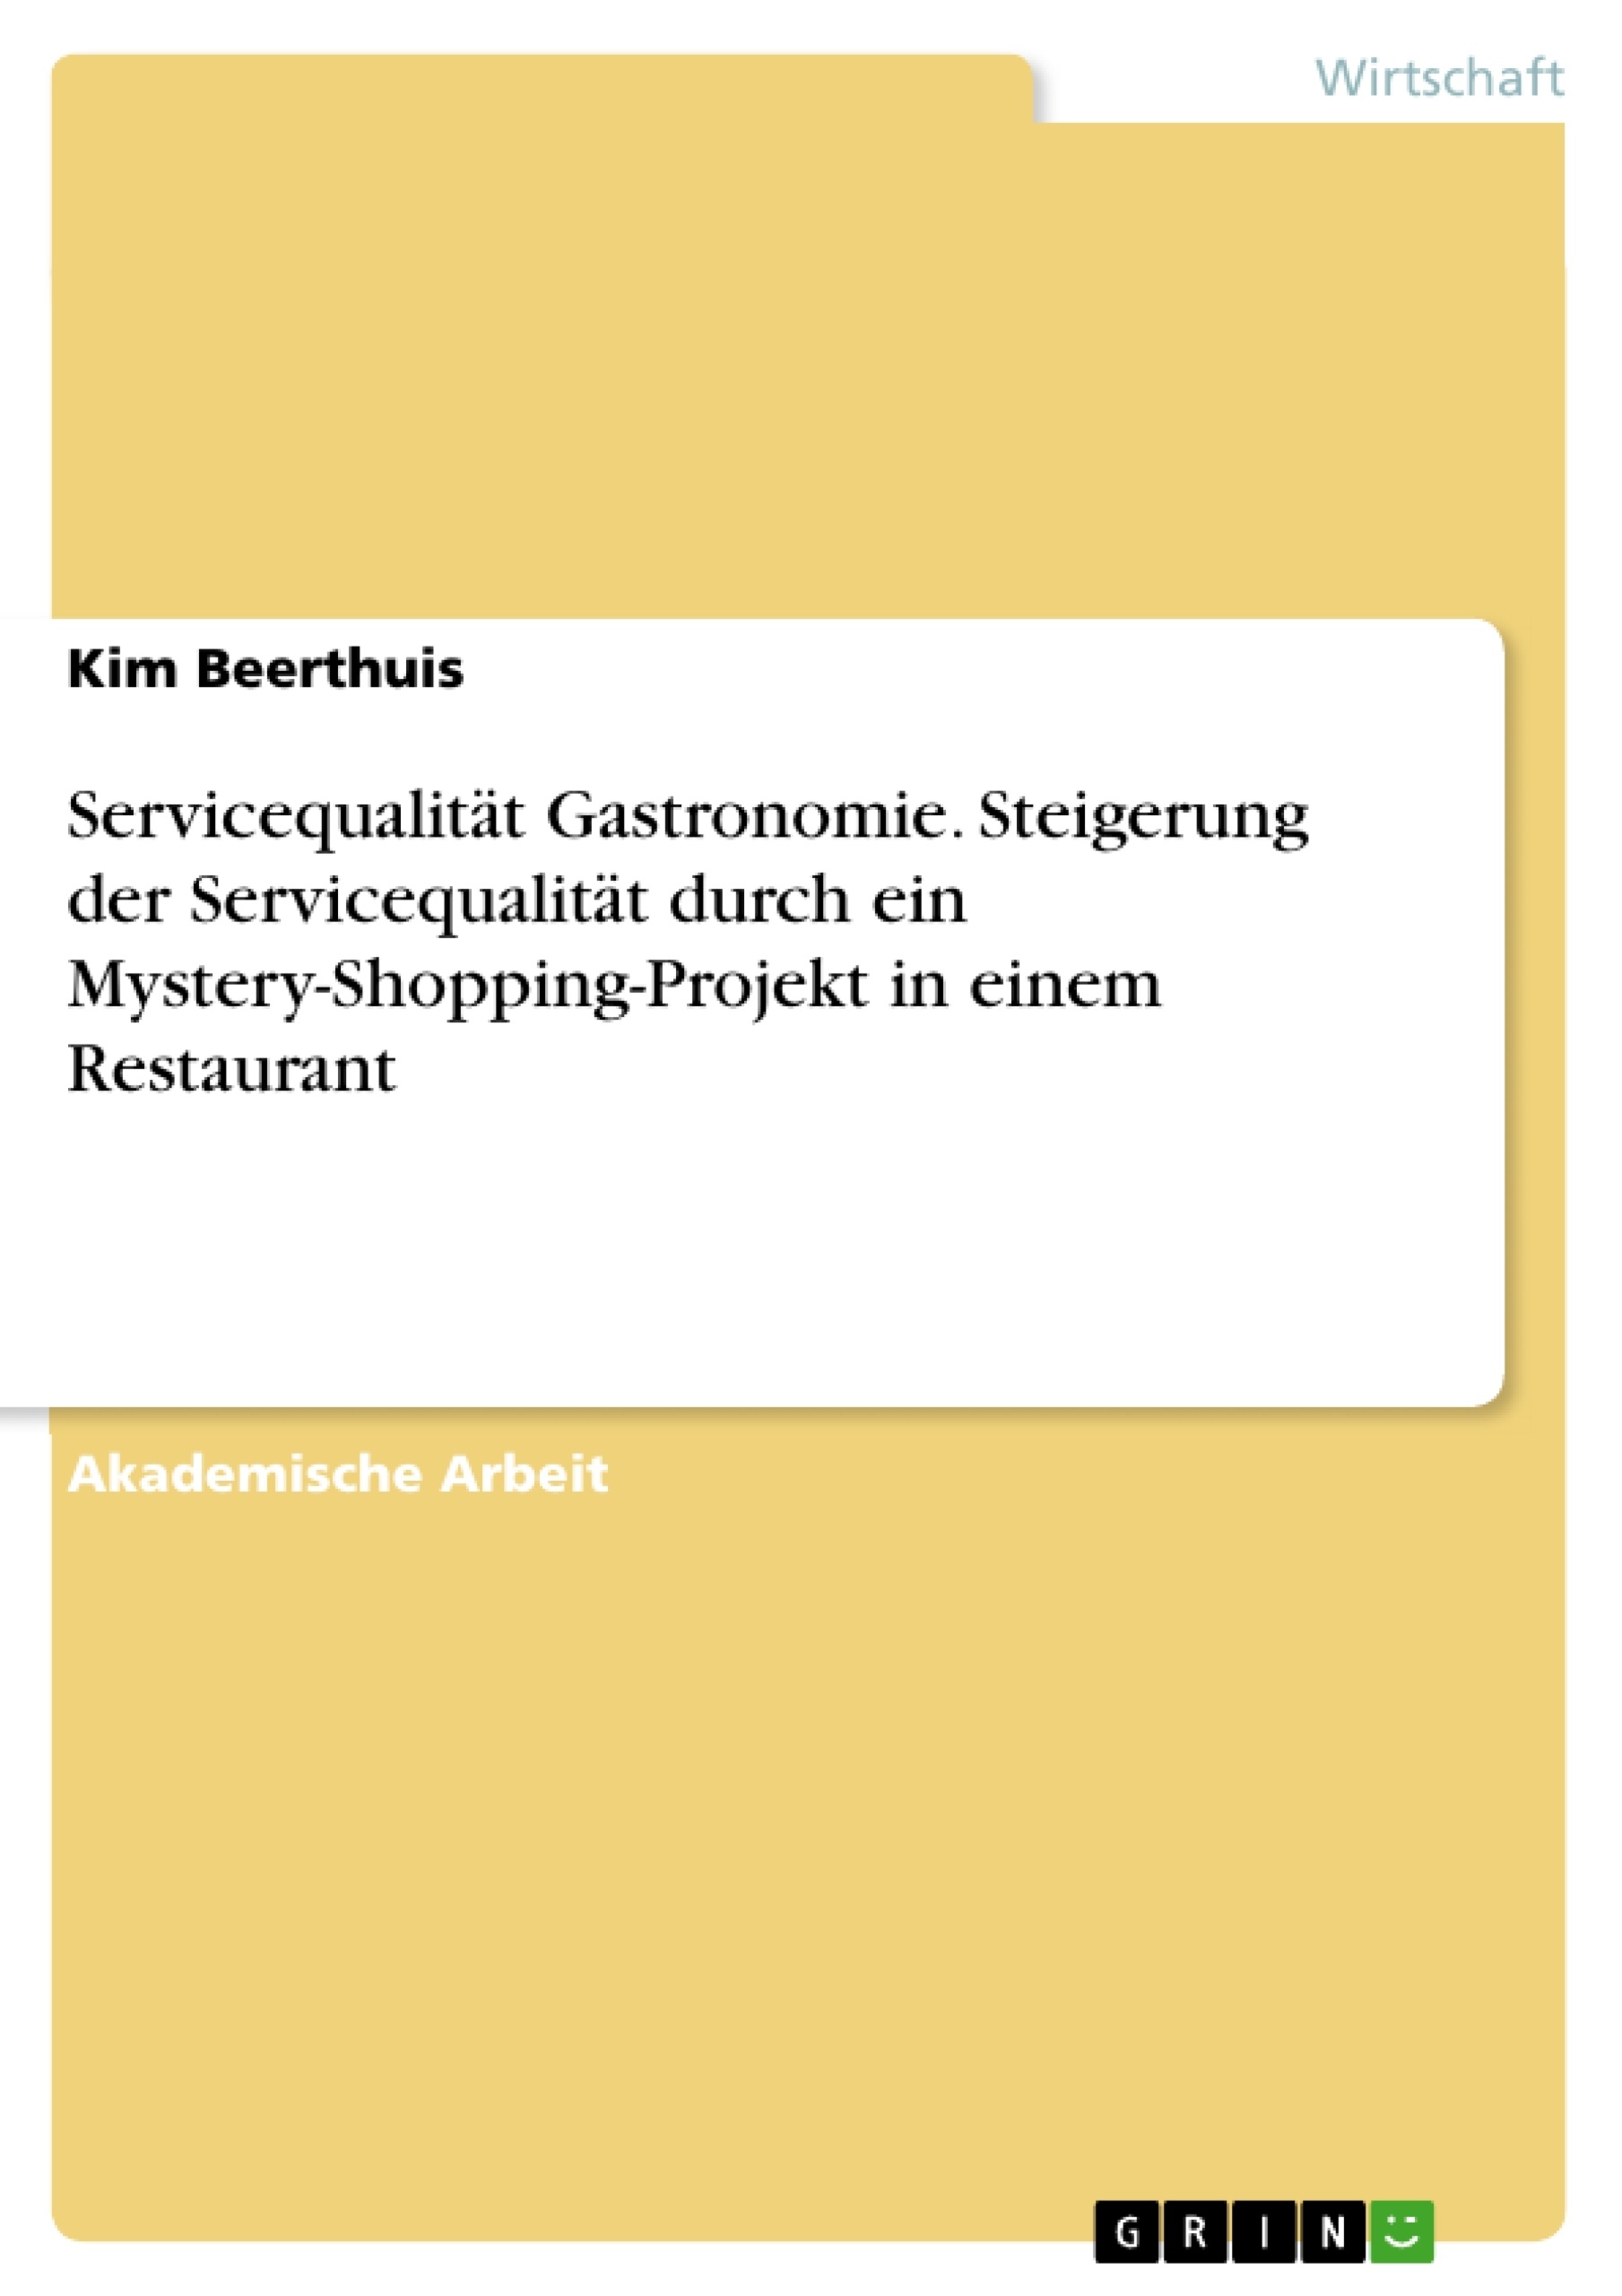 Título: Servicequalität Gastronomie. Steigerung der Servicequalität durch ein Mystery-Shopping-Projekt in einem Restaurant